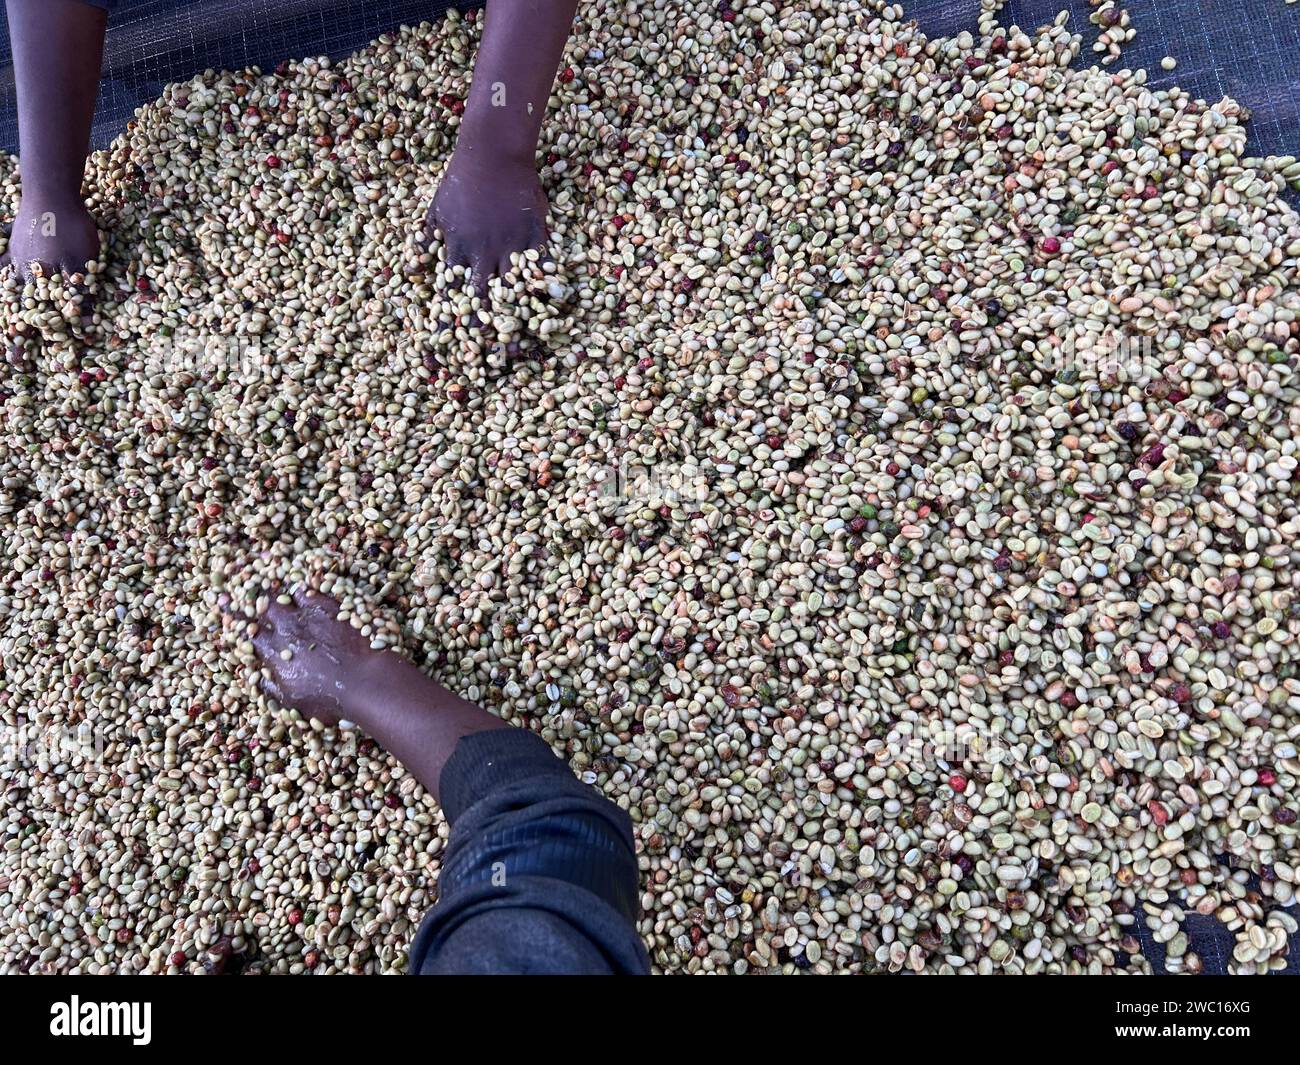 Mains de femmes mélangeant des cerises de café transformées par le procédé Honey dans la région de Sidama, en Éthiopie. Banque D'Images